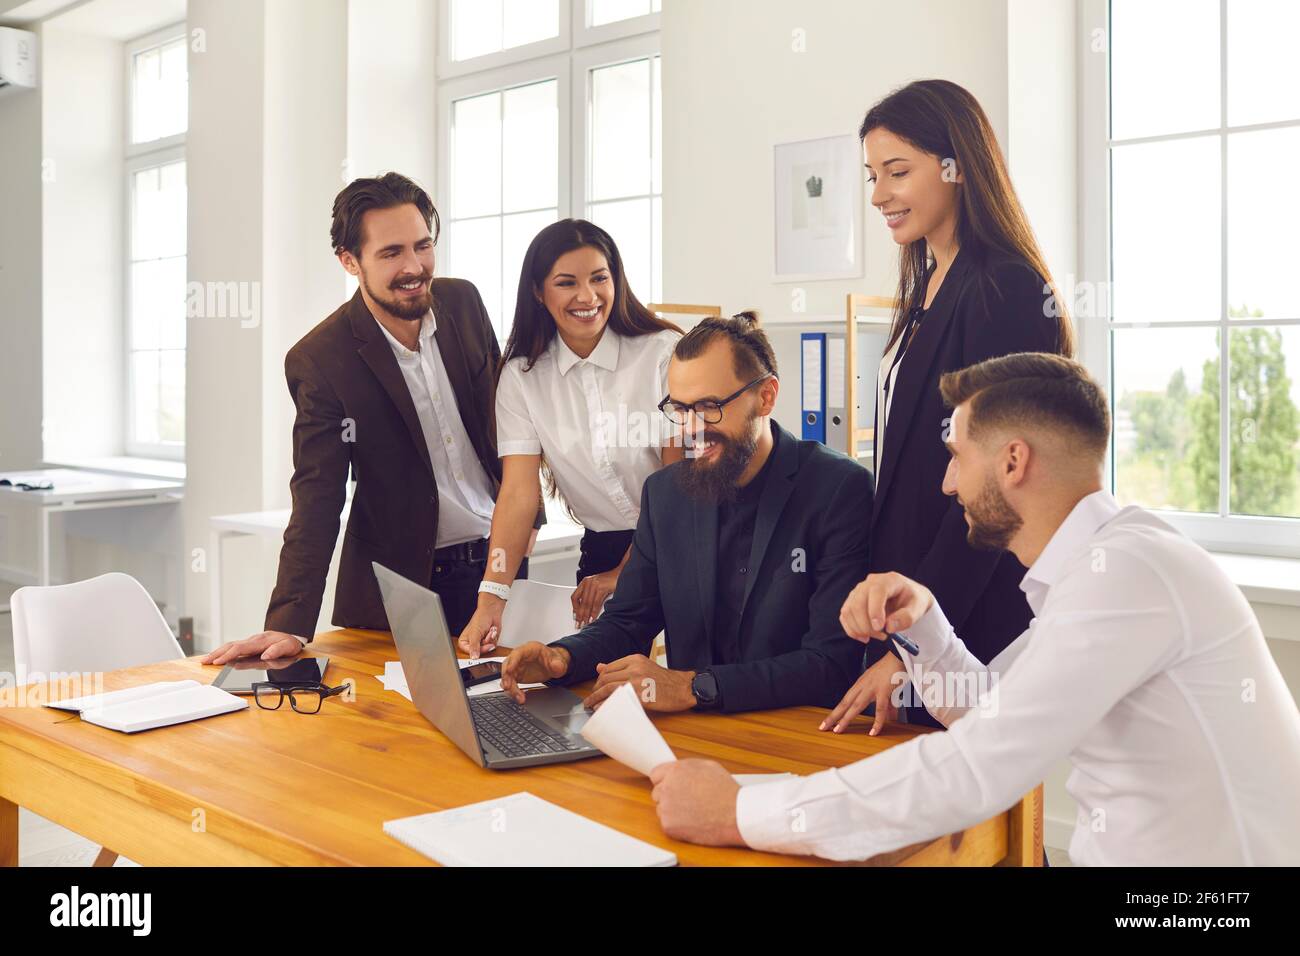 Les employés heureux de l'entreprise se réunissent au bureau et utilisent un ordinateur portable pour des recherches marketing ou des appels vidéo Banque D'Images